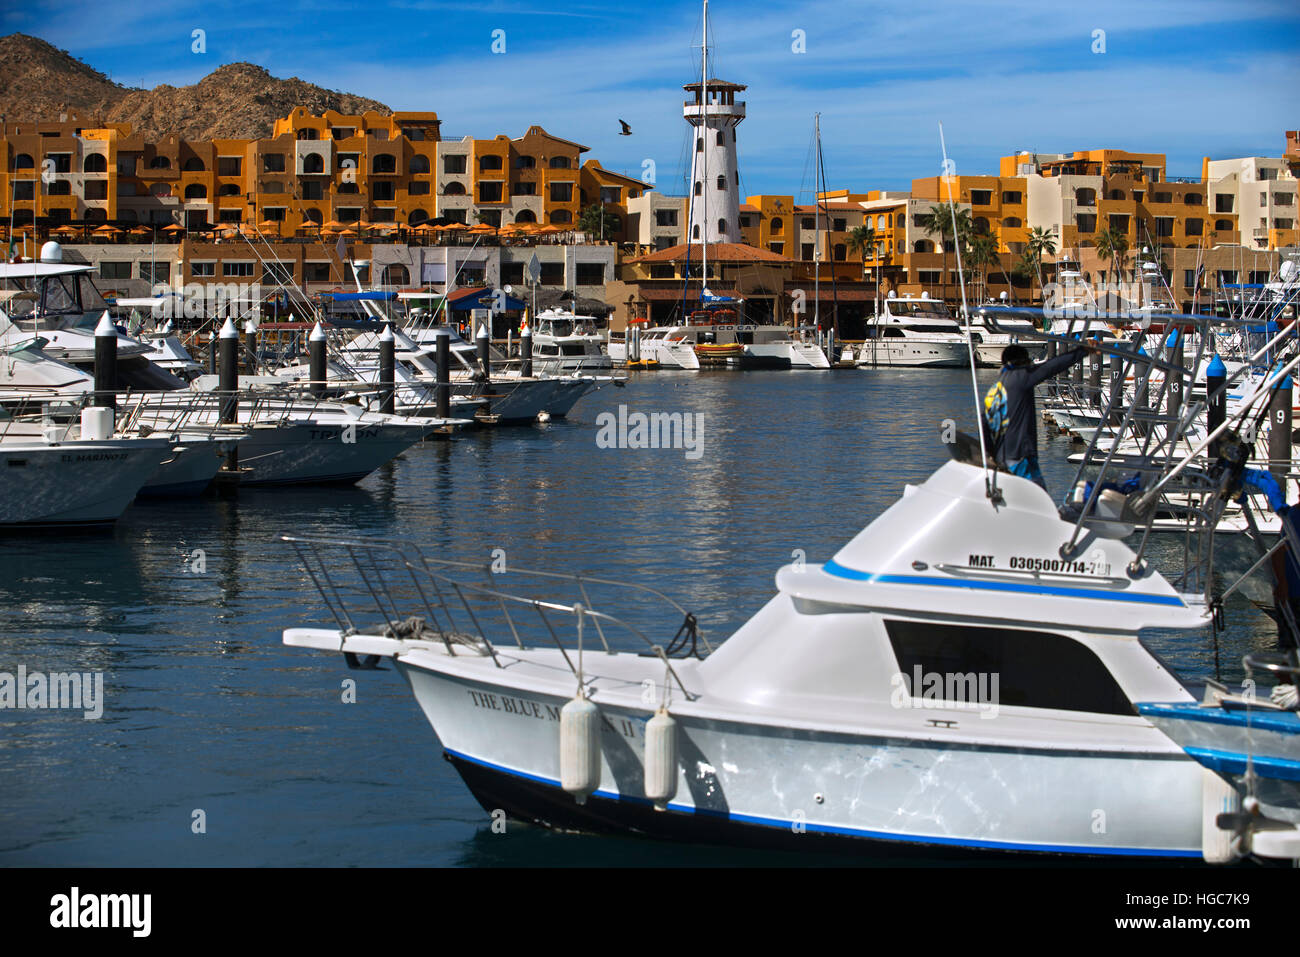 The Marina, Cabo San Lucas, Los Cabos, Baja California, Mexico. Stock Photo